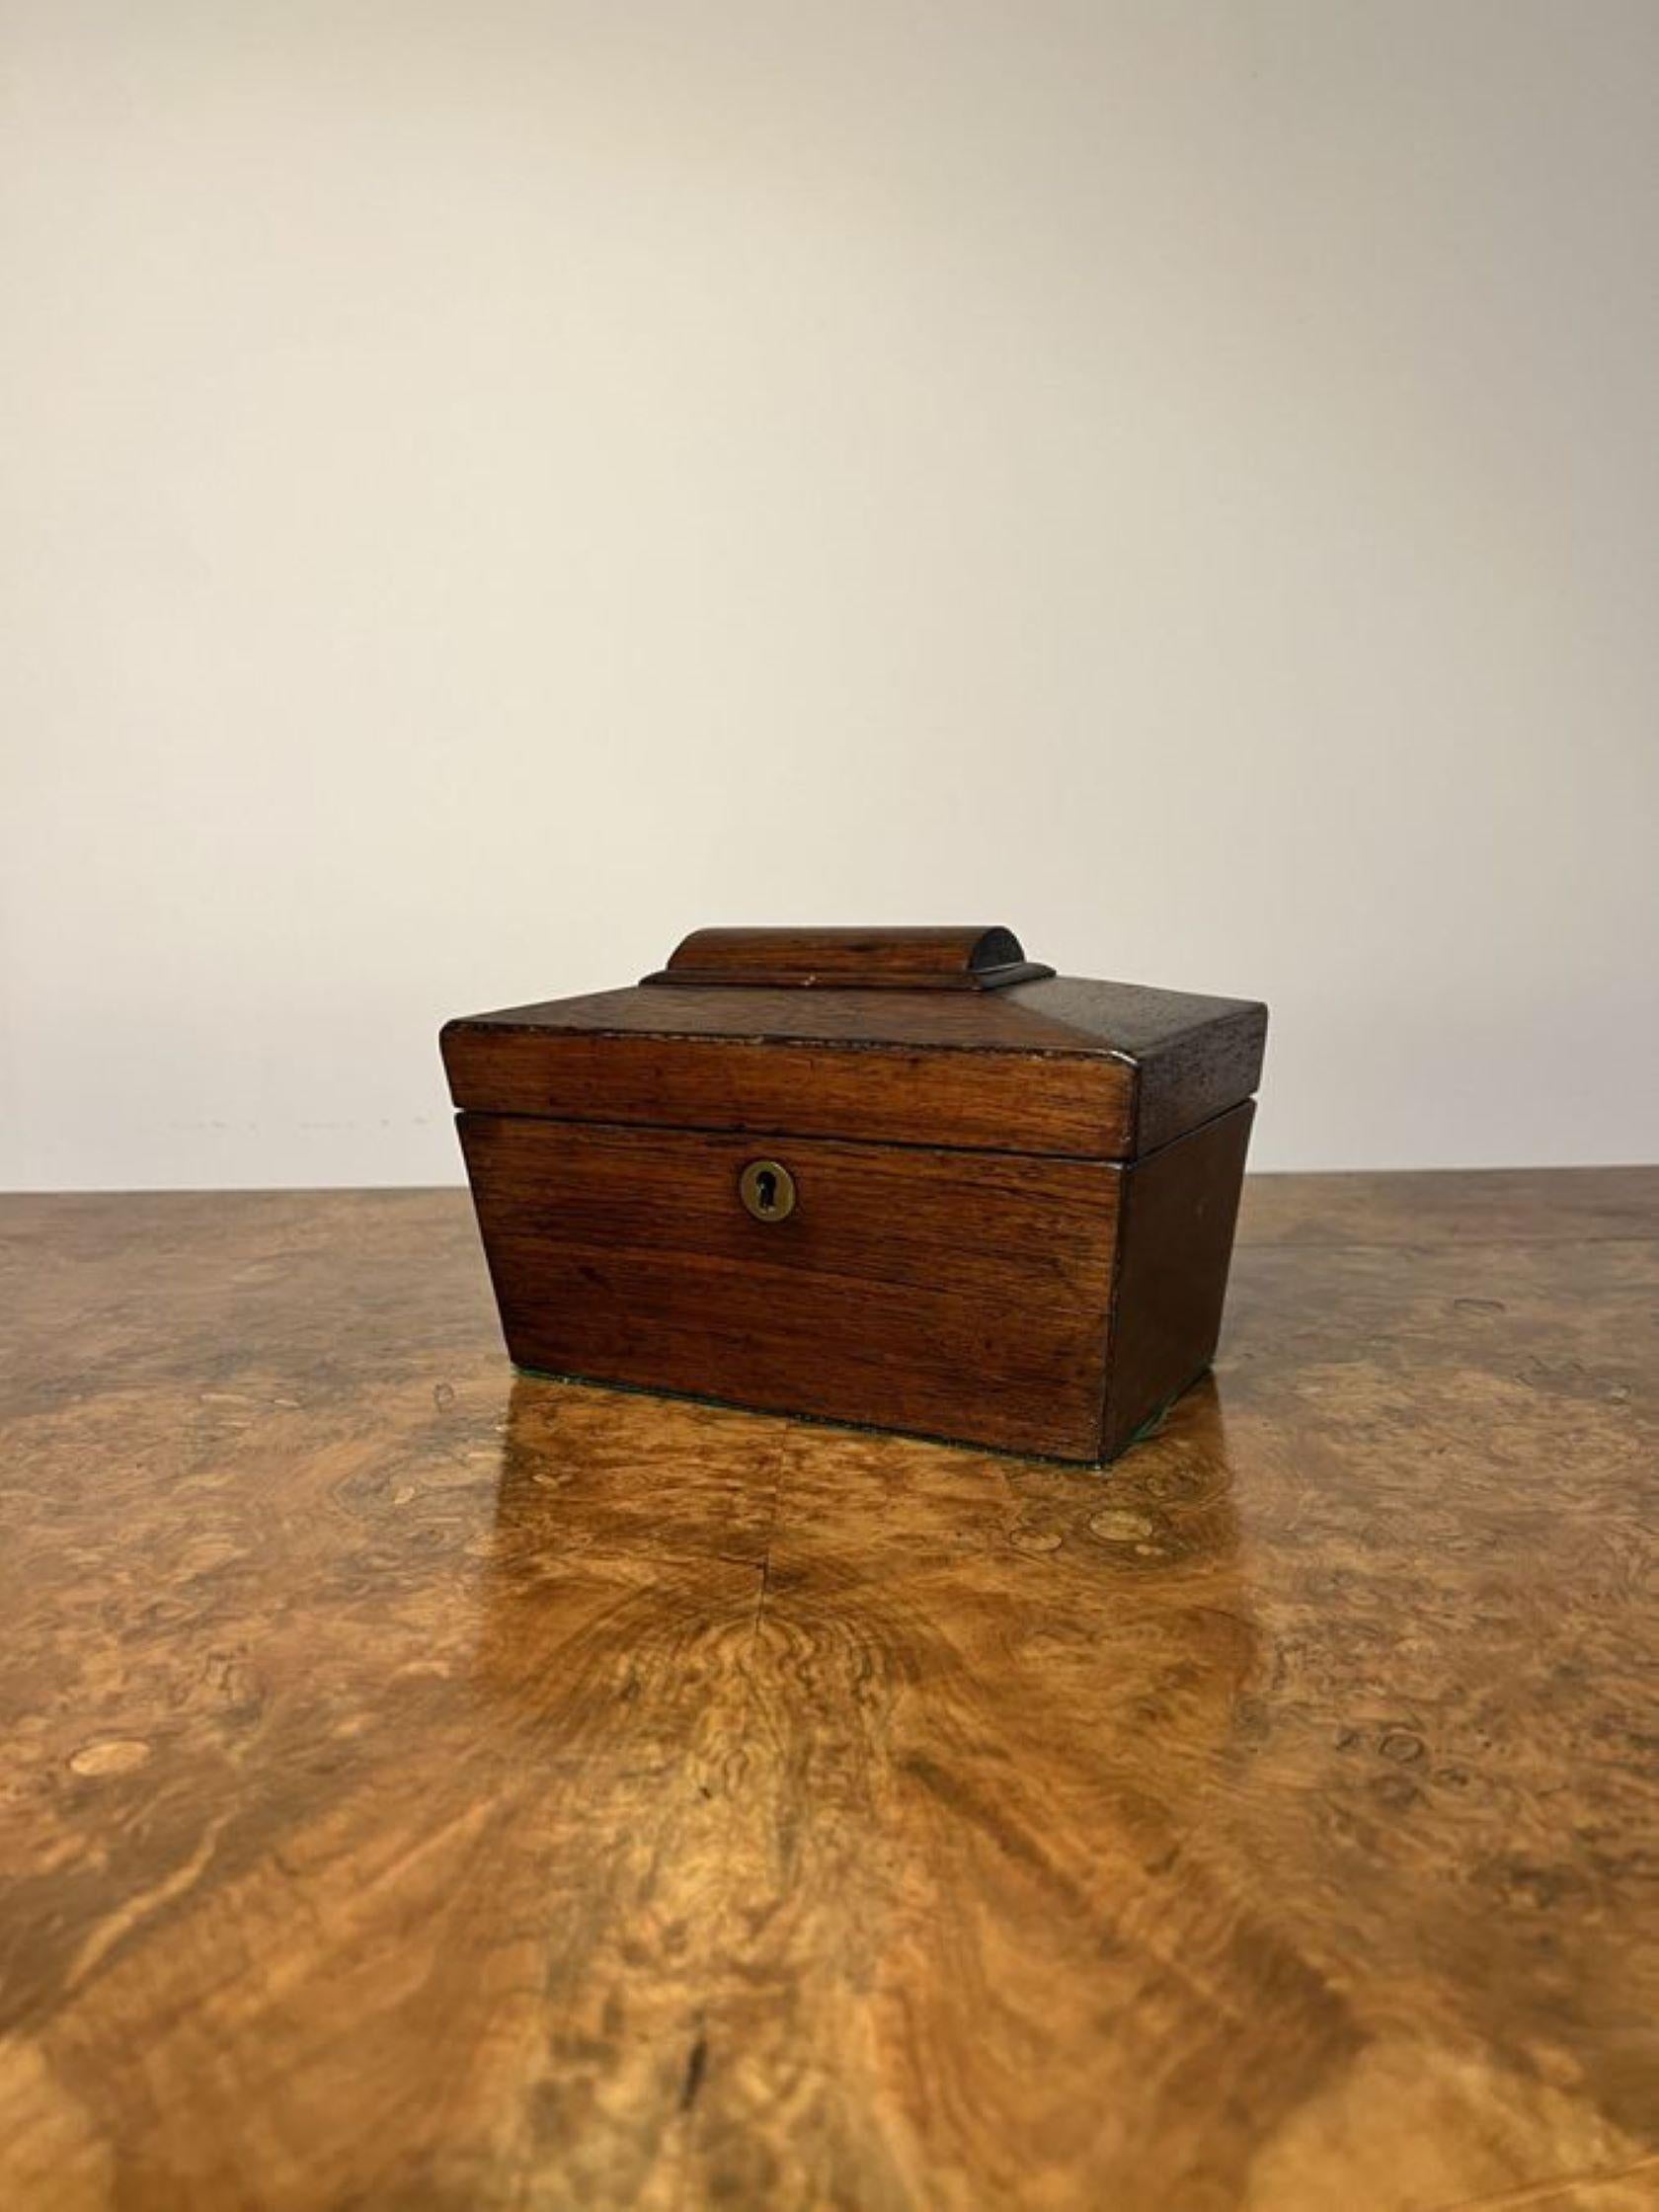 Schöne antike viktorianische Palisander Aufbewahrungsbox, mit einer Qualität Palisander-Box von Sarkophag Form, mit einem Lift-up-Deckel zu öffnen, um ein Lagerfach mit roten Innenraum zu offenbaren.

D. 1850